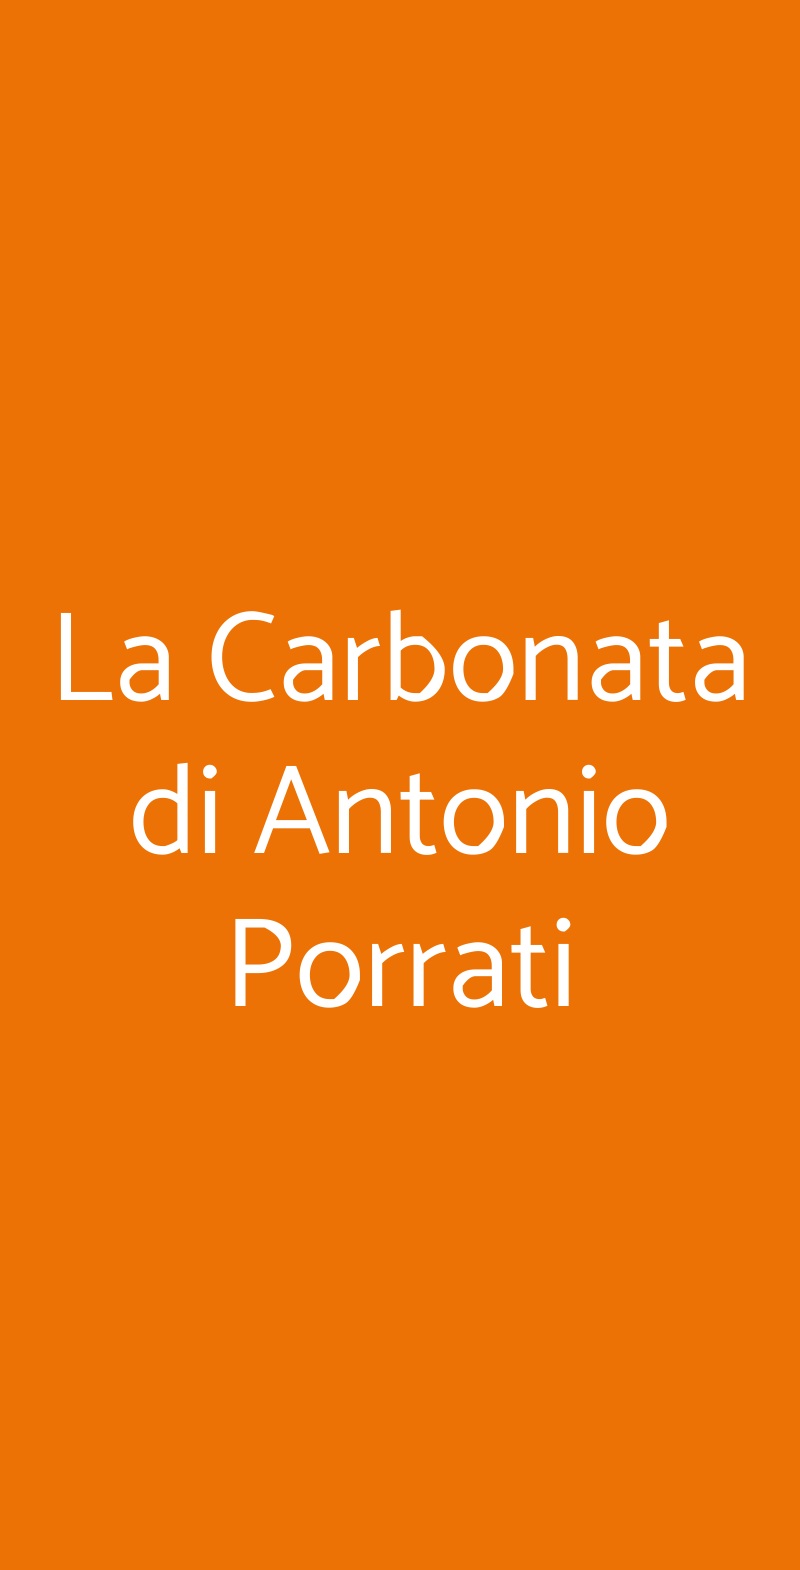 La Carbonata di Antonio Porrati Firenze menù 1 pagina